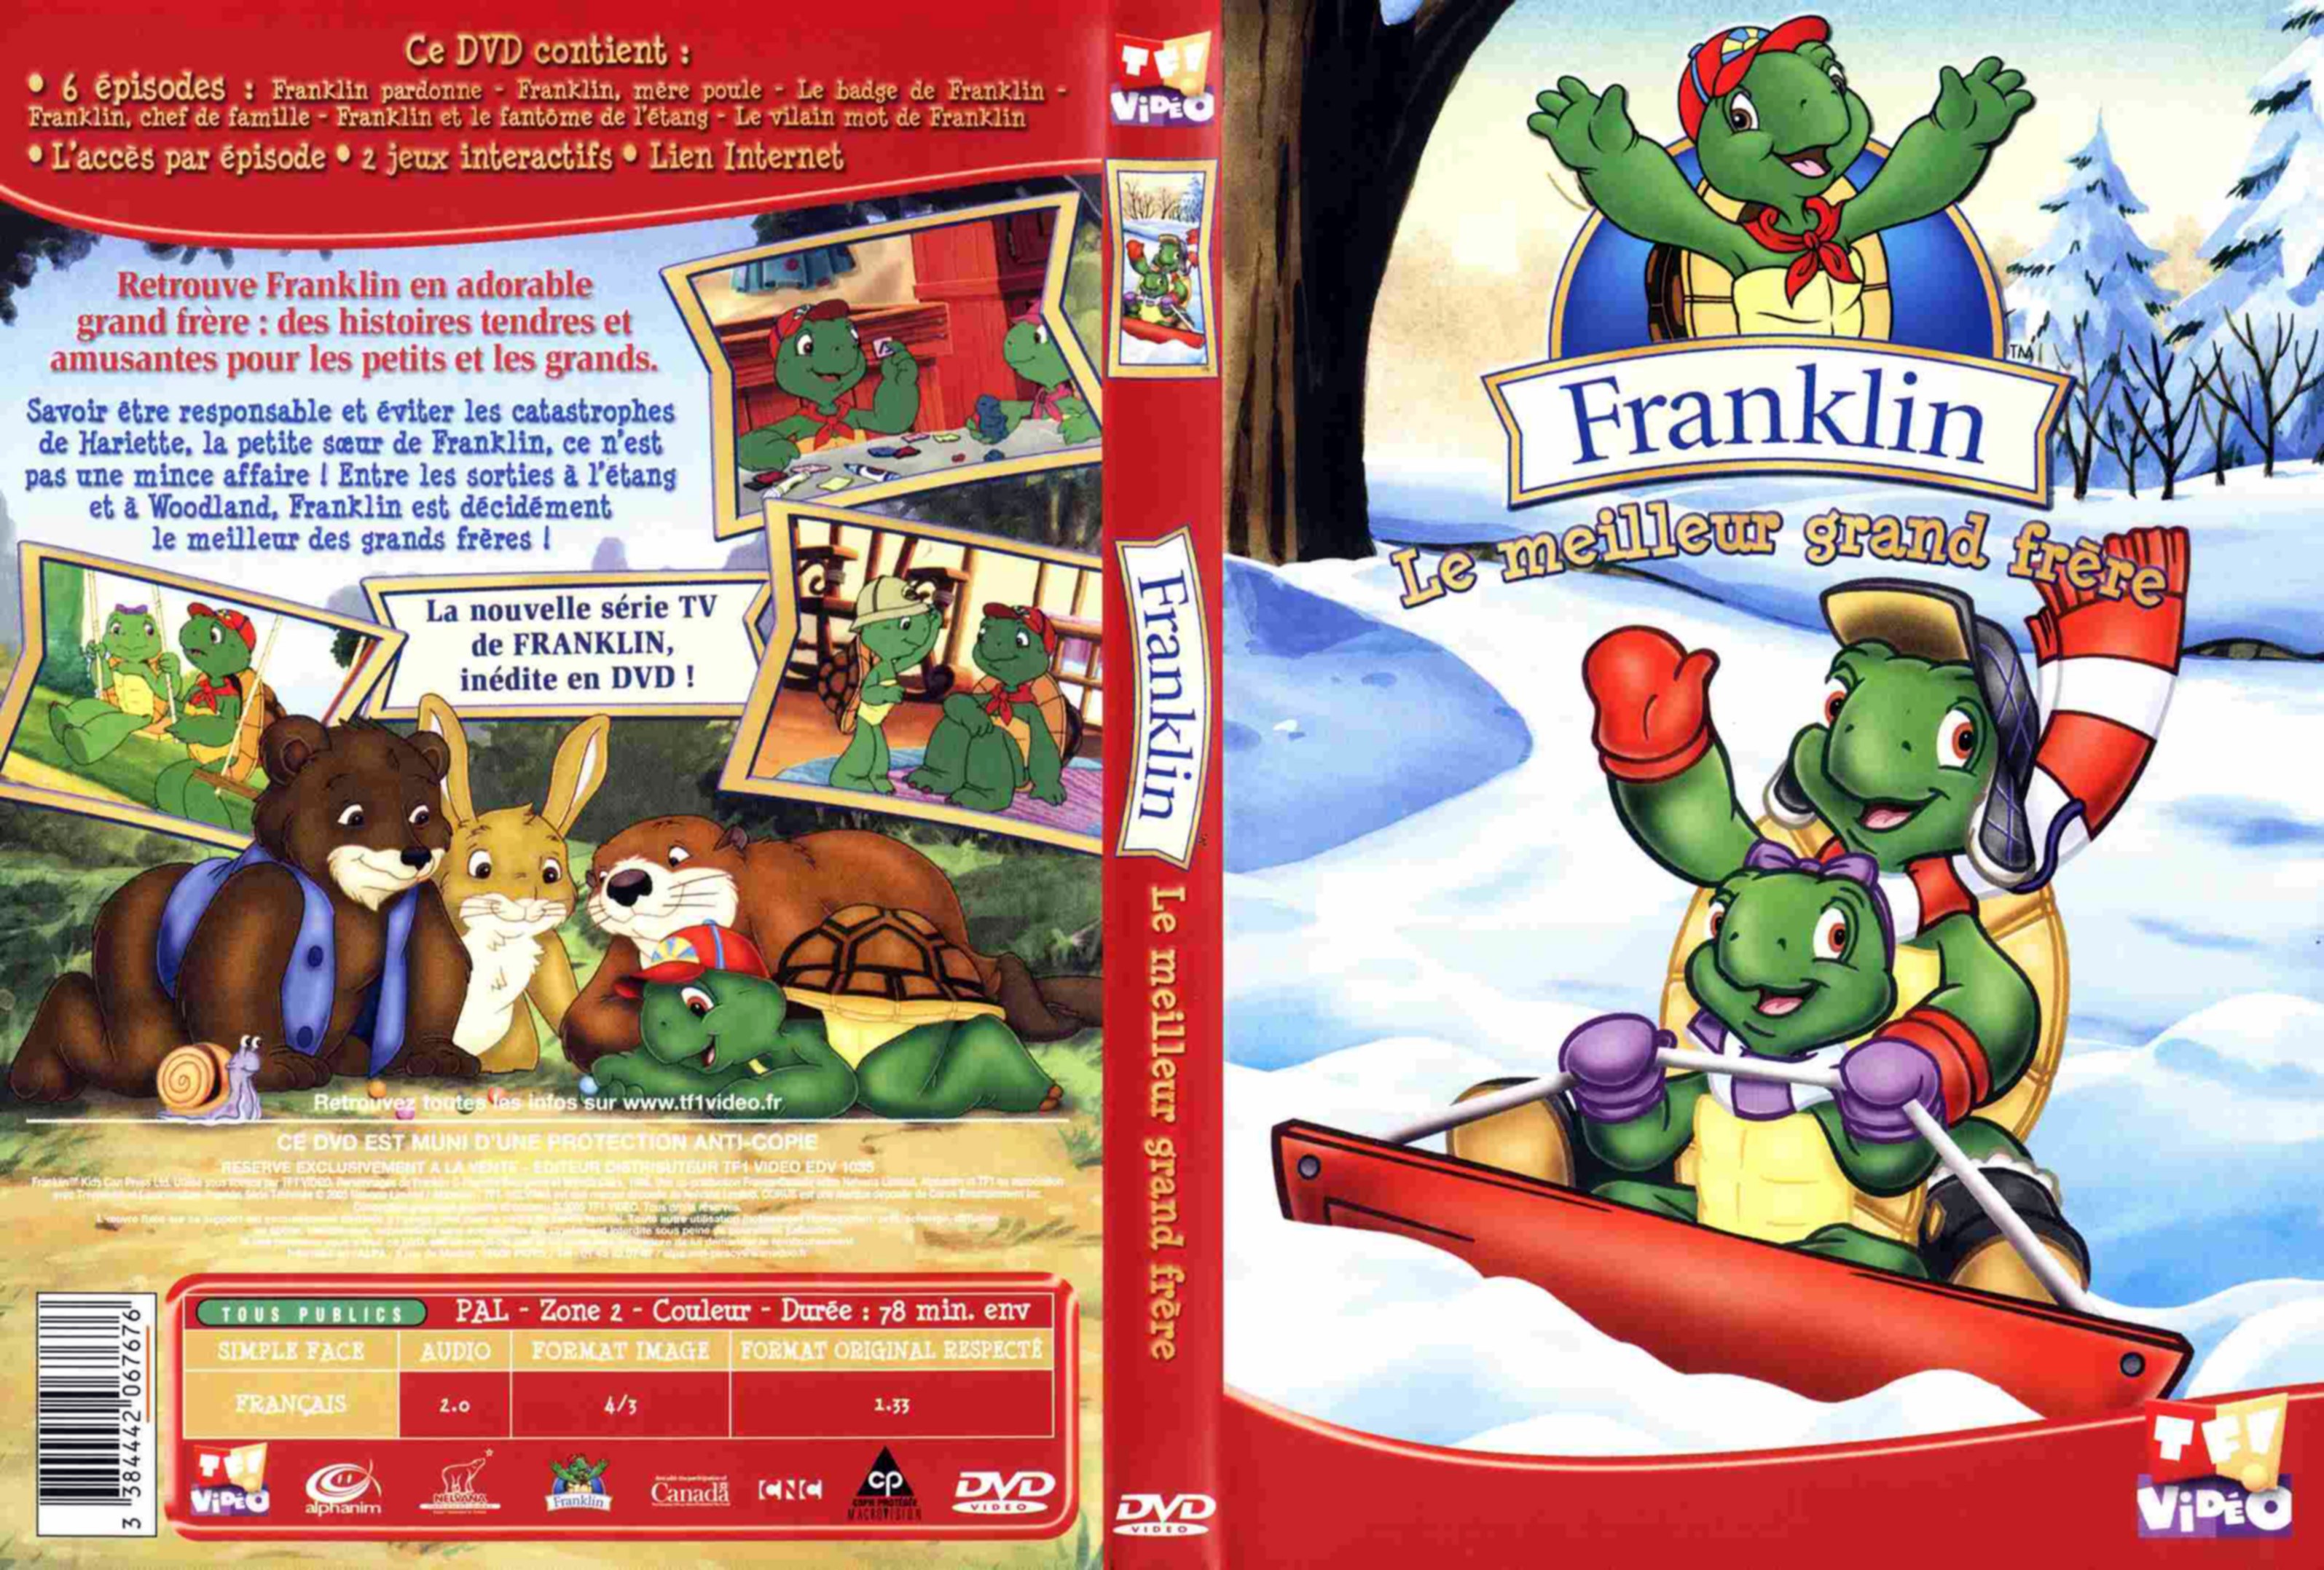 Jaquette DVD Franklin le meilleur grand frre